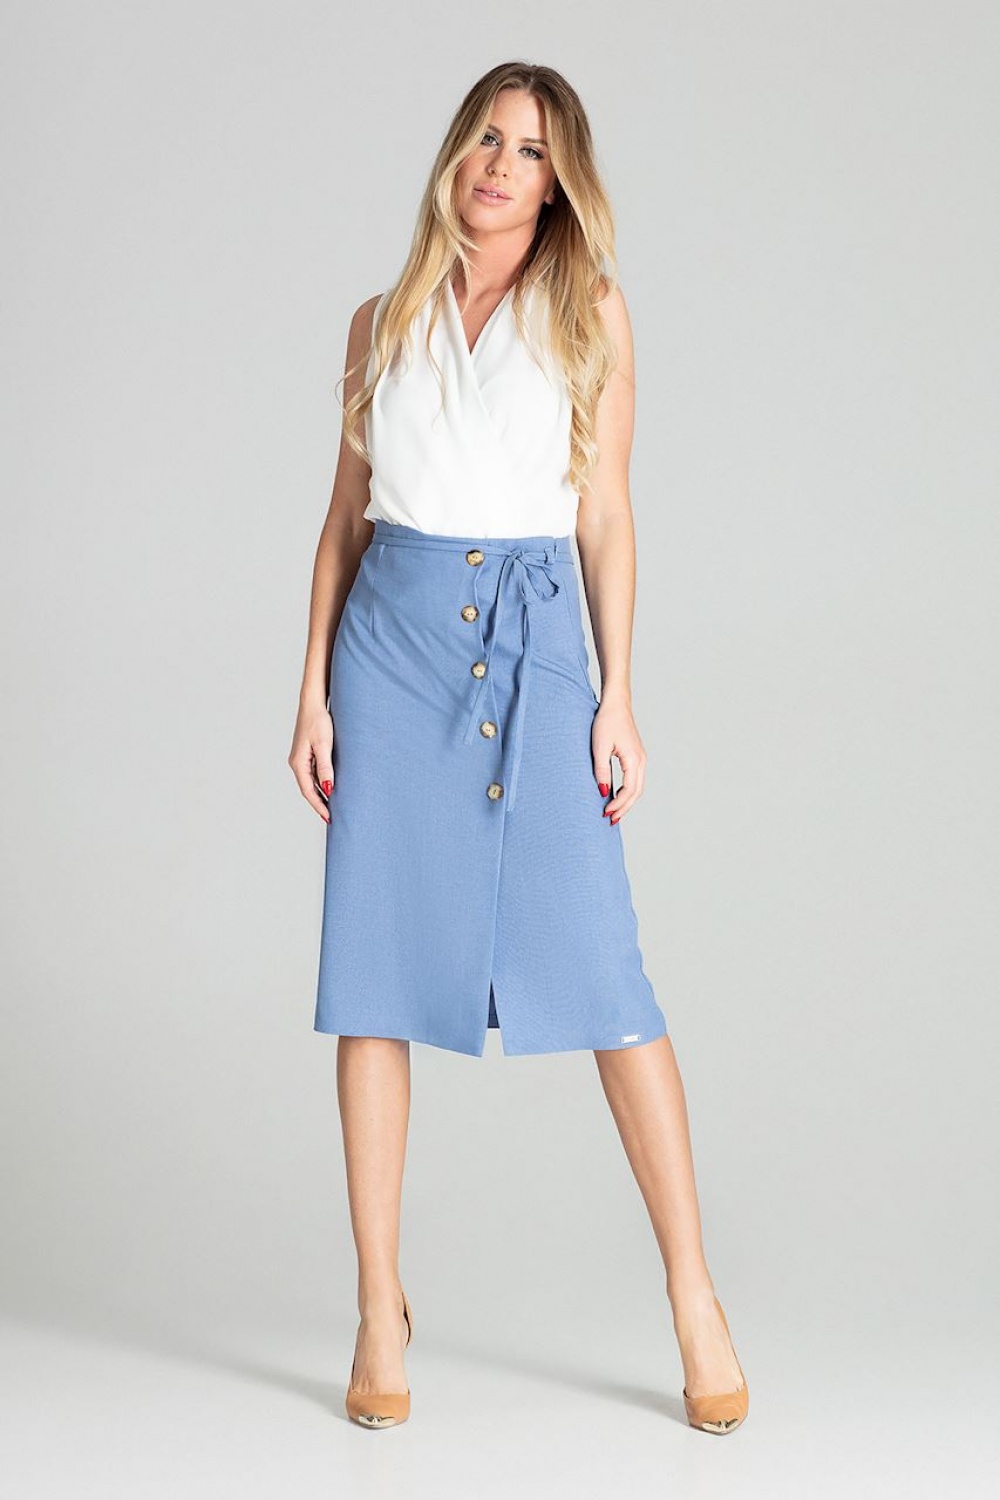  Skirt model 141758 Figl  blue